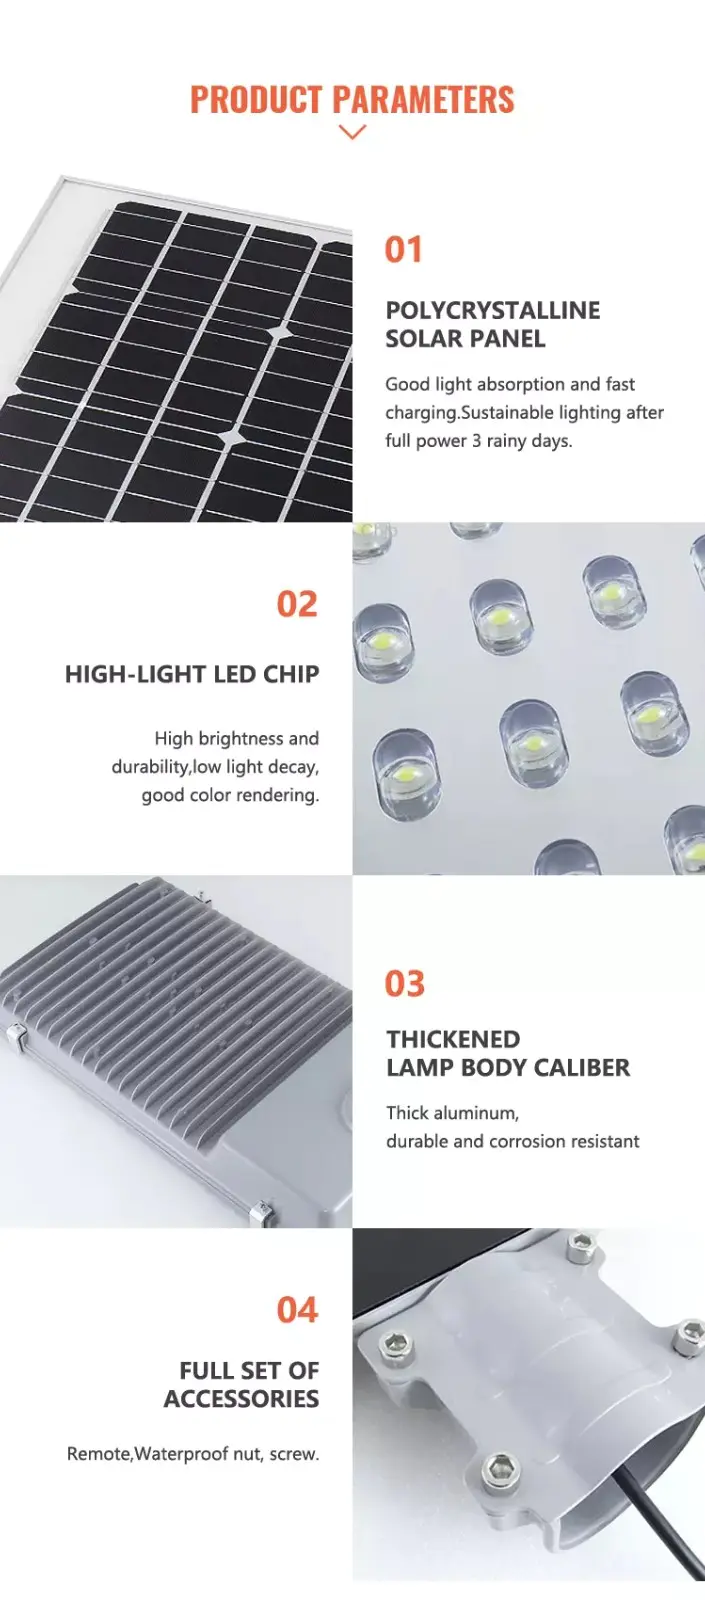 Litel Technology sensor solar street lights for home control for